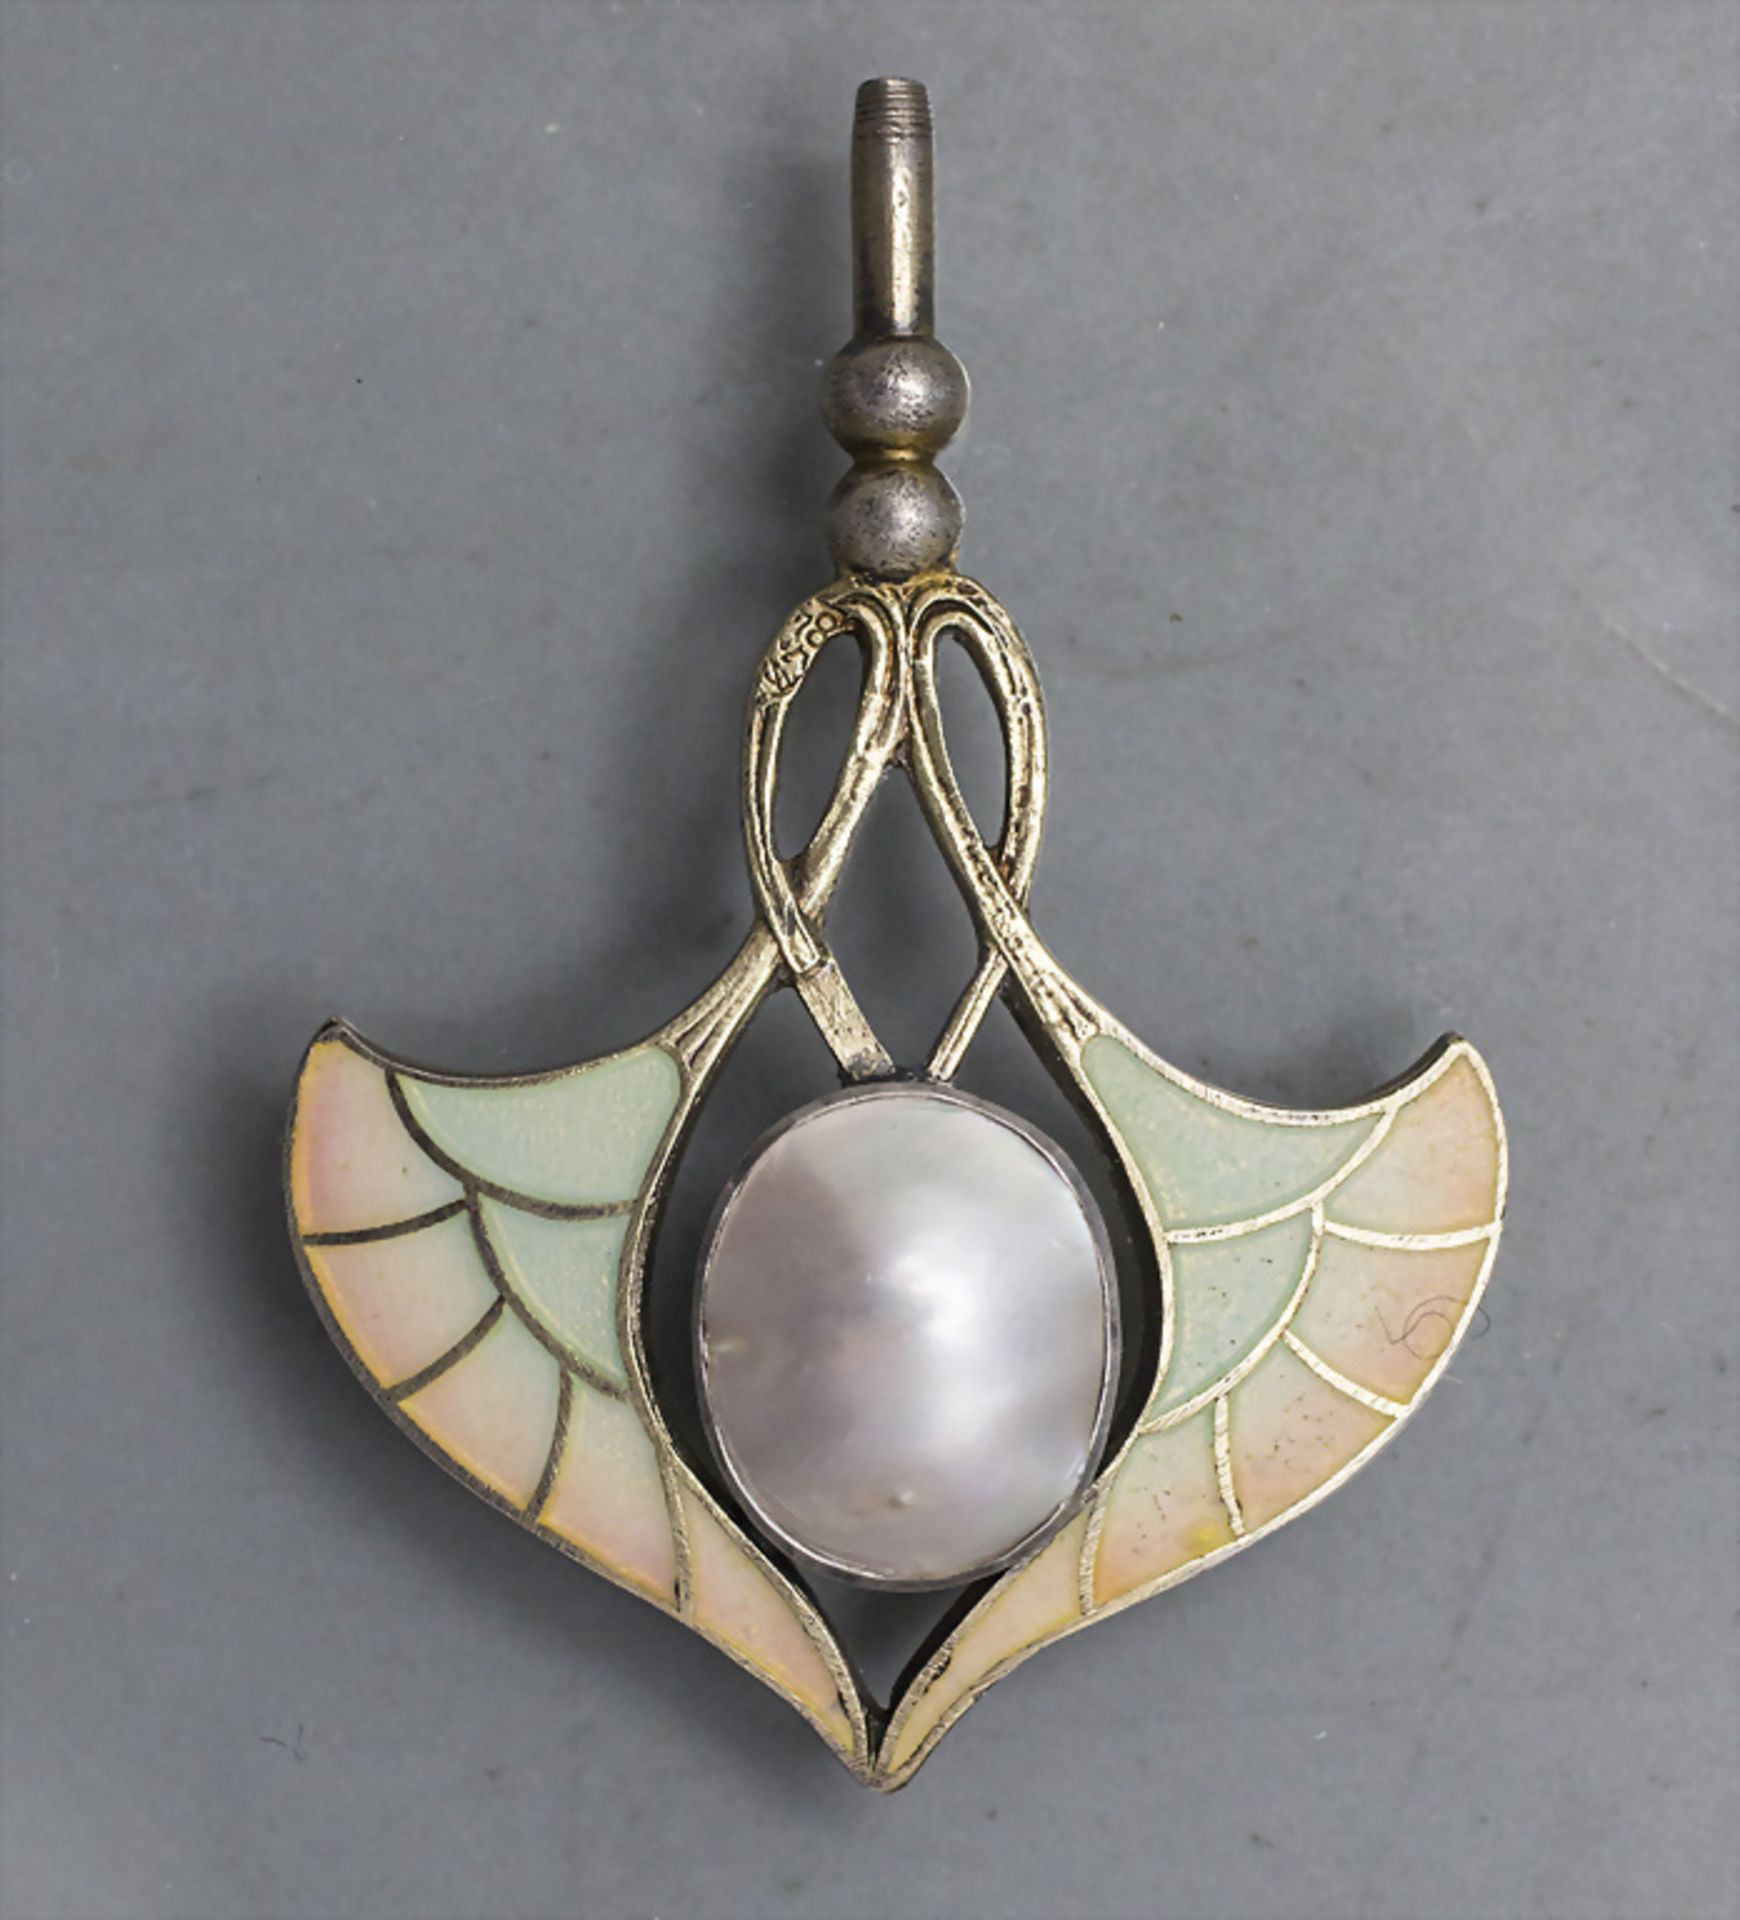 Jugendstil Anhänger / An Art Nouveau pendant, wohl Carl Hermann, Pforzheim, um 1900